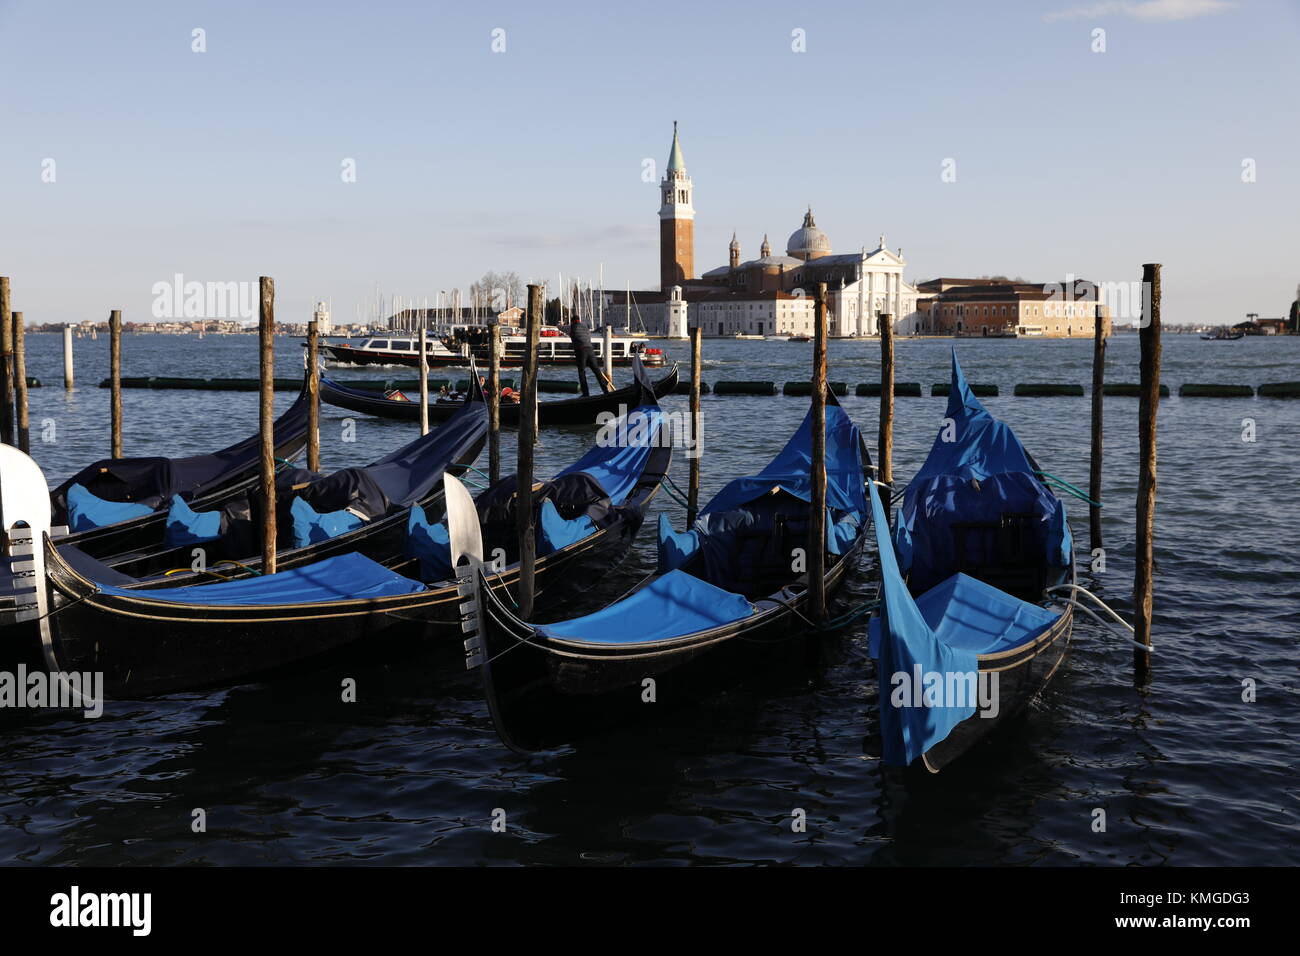 Venise, Italie : les gondoles sont amarrés le long de la Riva degli Schiavoni, près de la Piazza San Marco avec l'église de San Giorgio Maggiore vu dans la distance. Banque D'Images